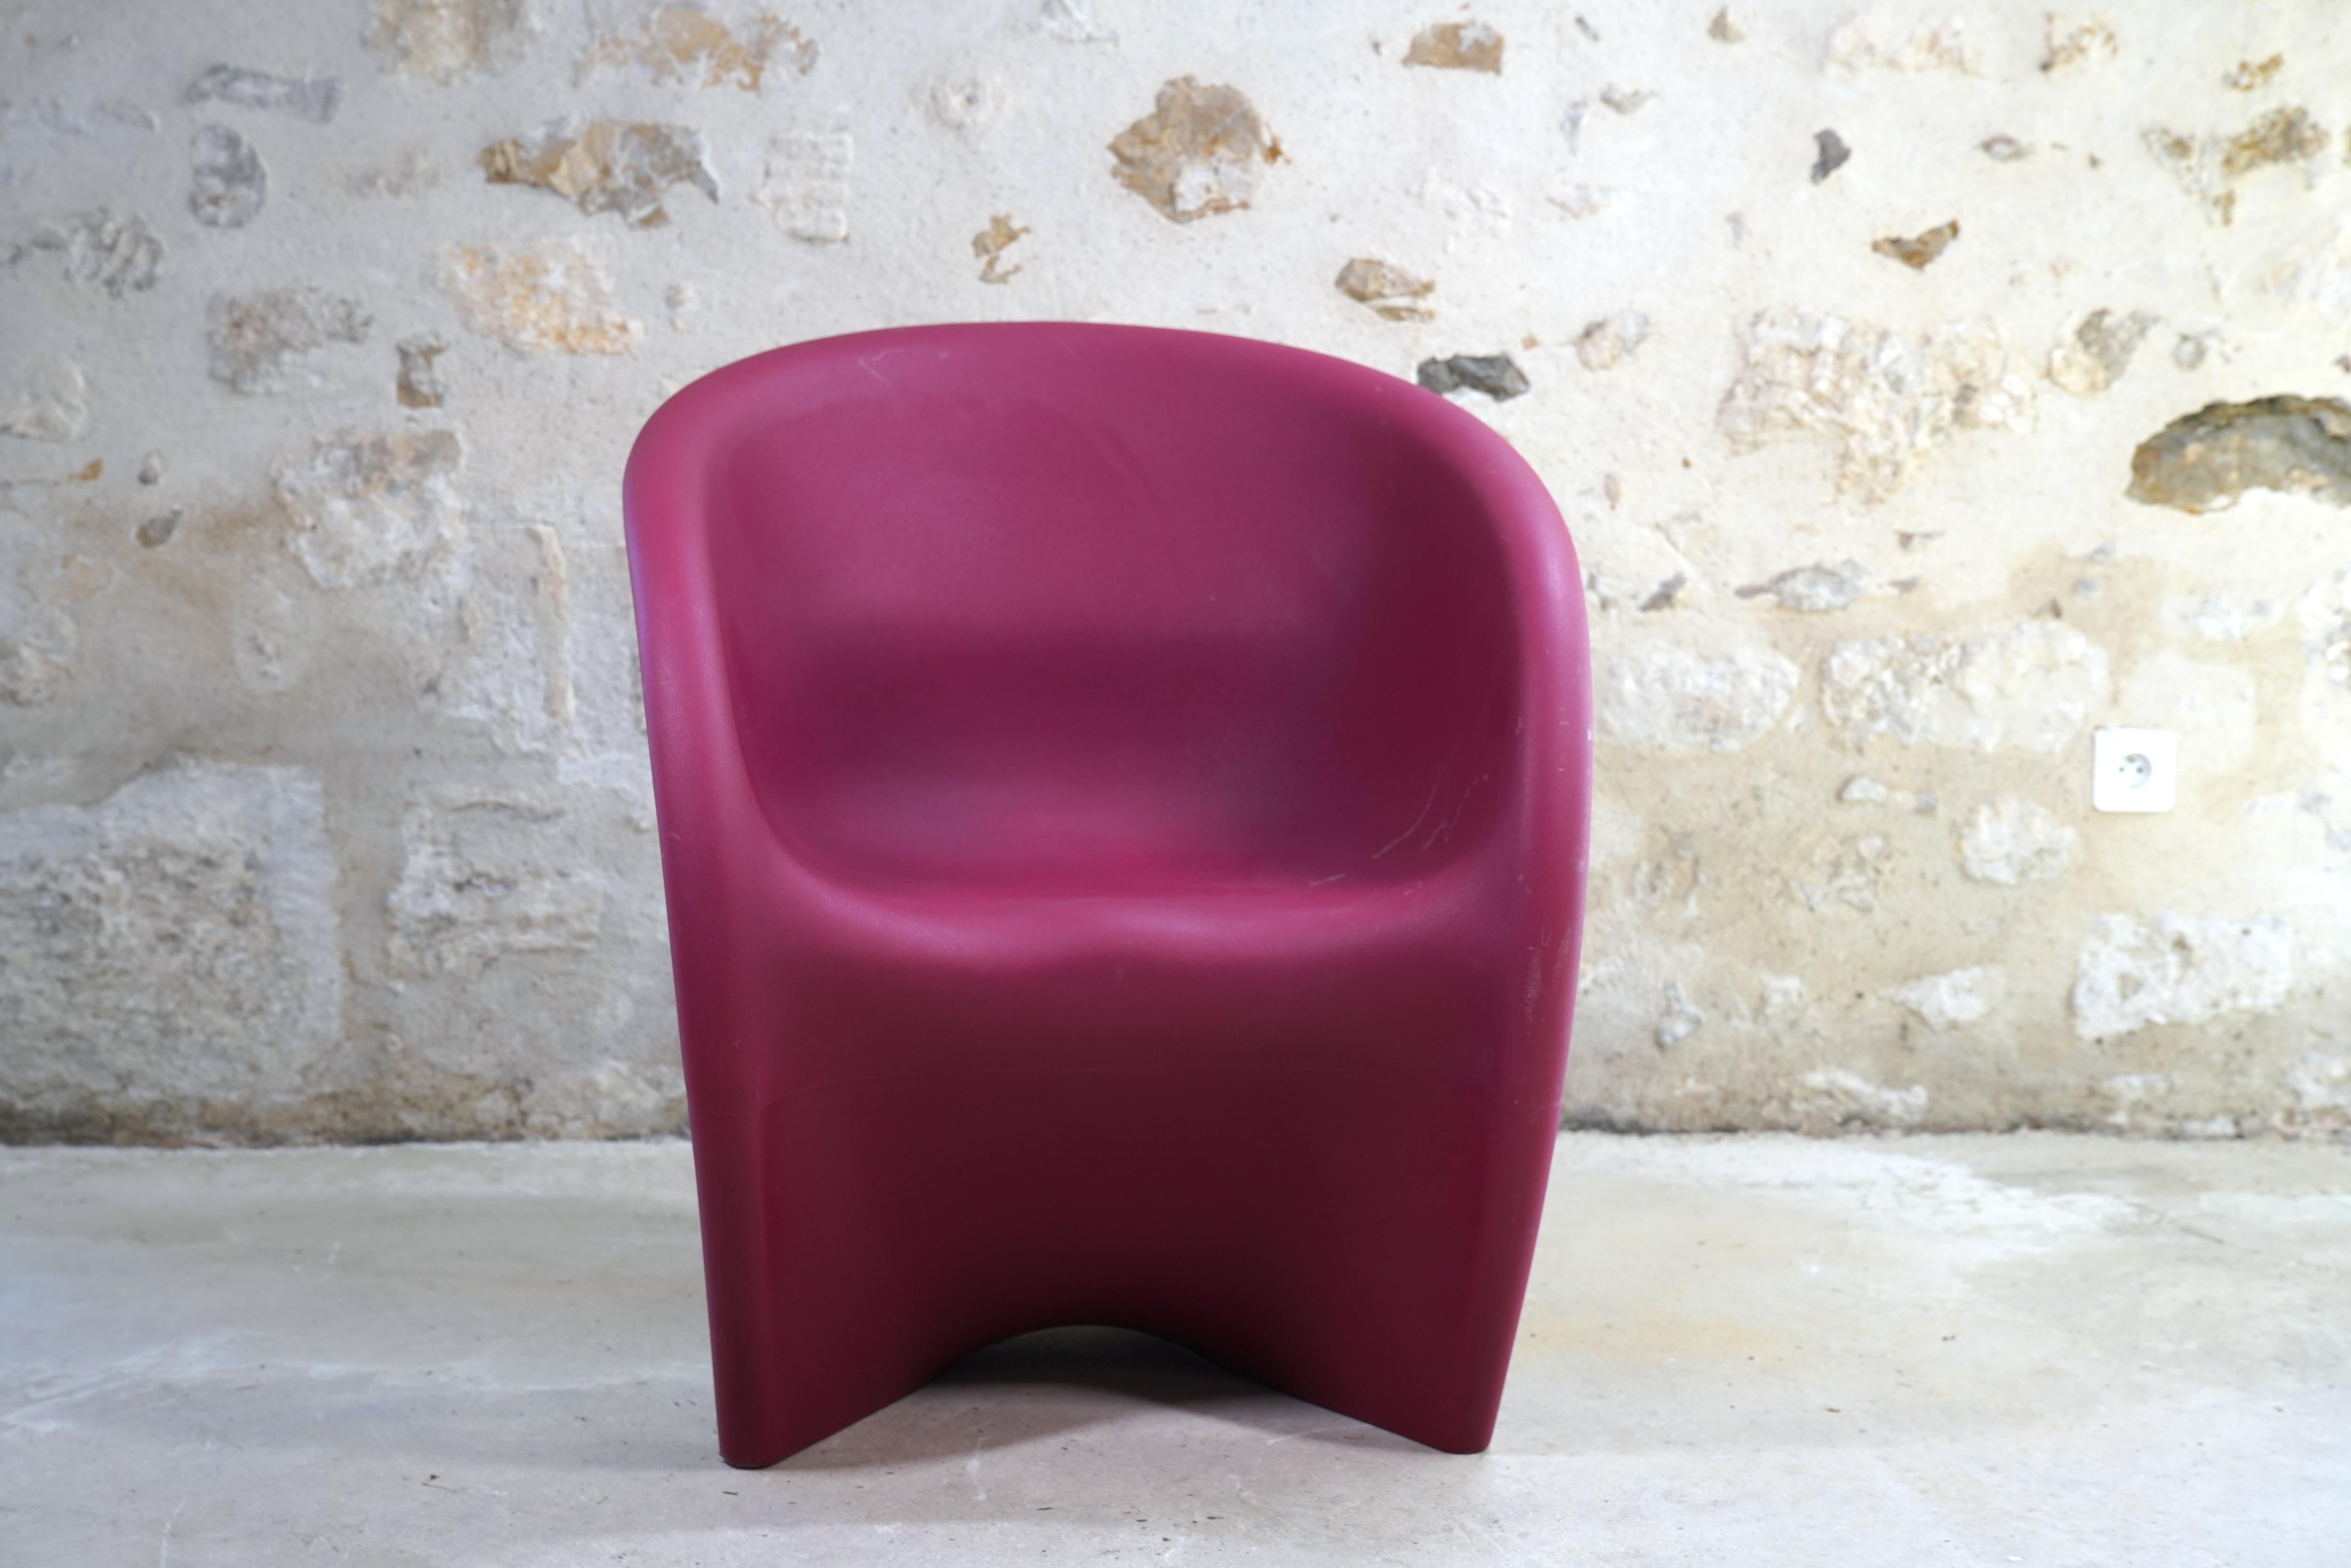 Sehr cooler MT1 Lounge Chair, entworfen vom Industriedesigner, Architekten und Künstler Ron Arad für Driade um das Jahr 2000.

